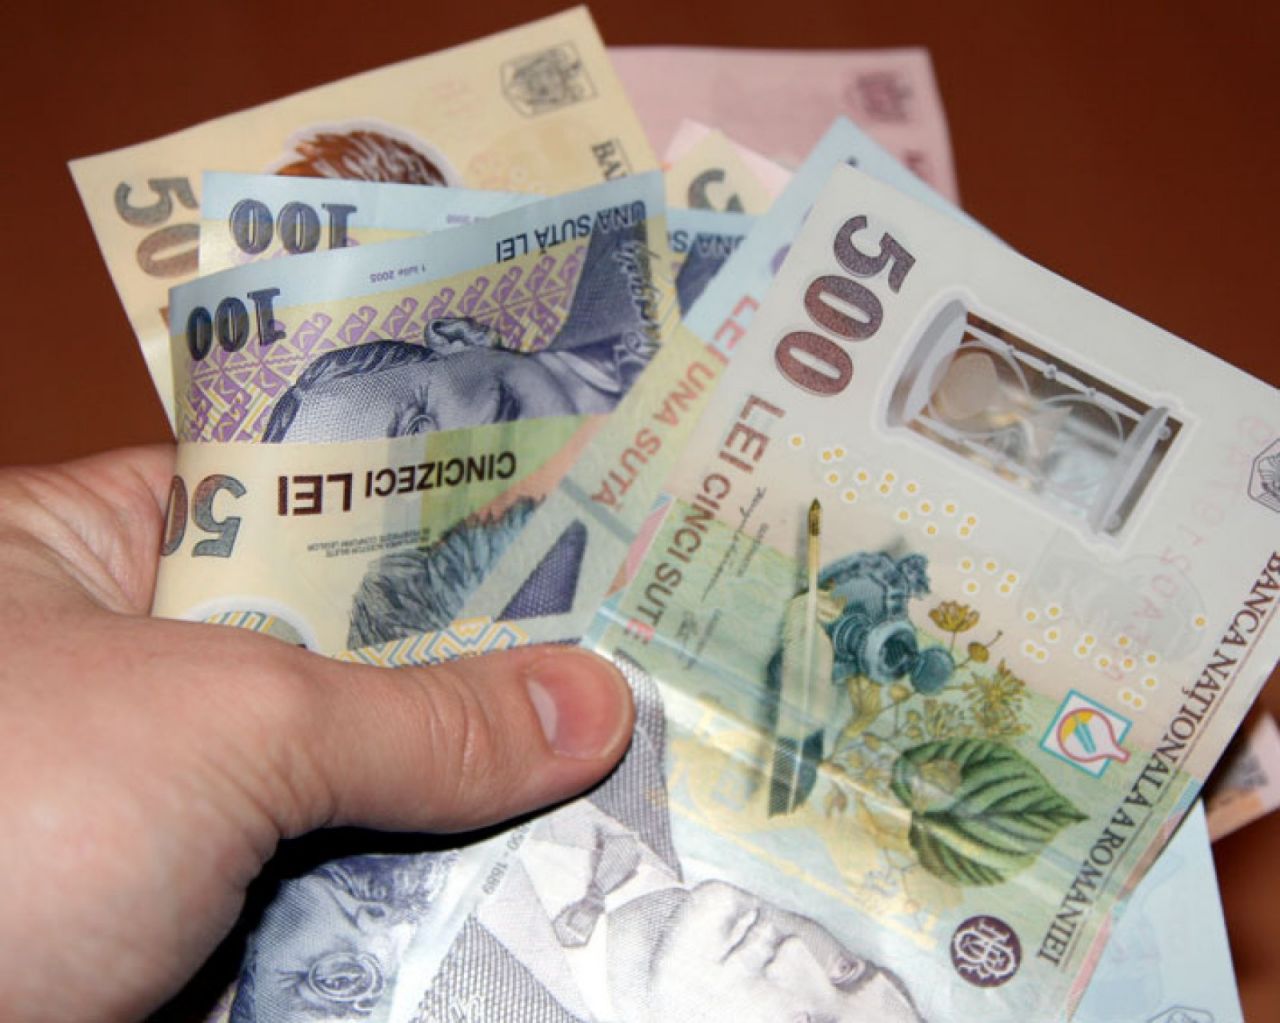 Taxe noi în 2021. Pentru ce vor scoate românii mai mulți bani din buzunar?